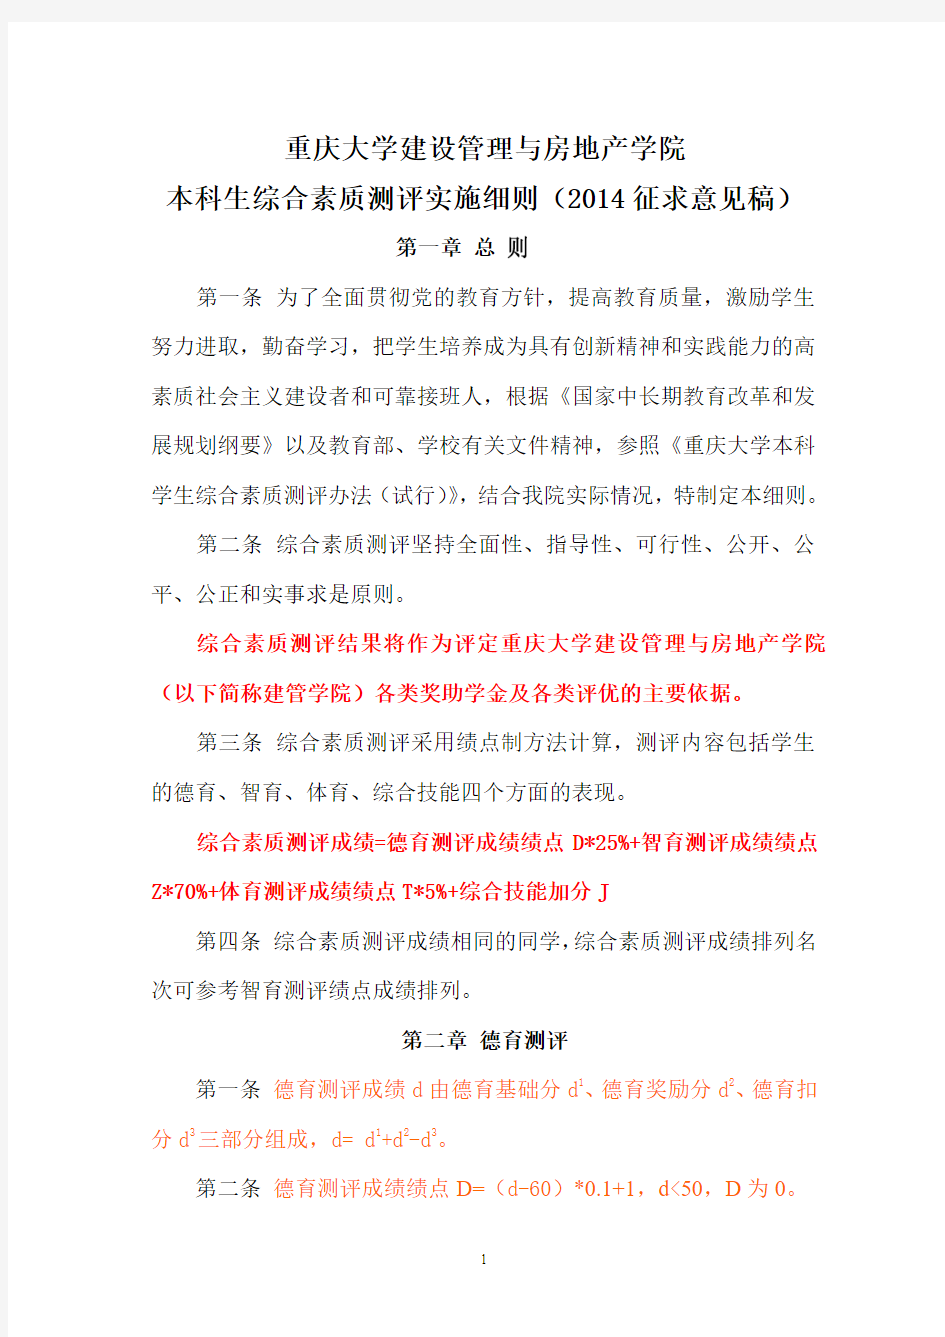 重庆大学建设管理与房地产学院本科生综合素质测评实施细则(2014试行)